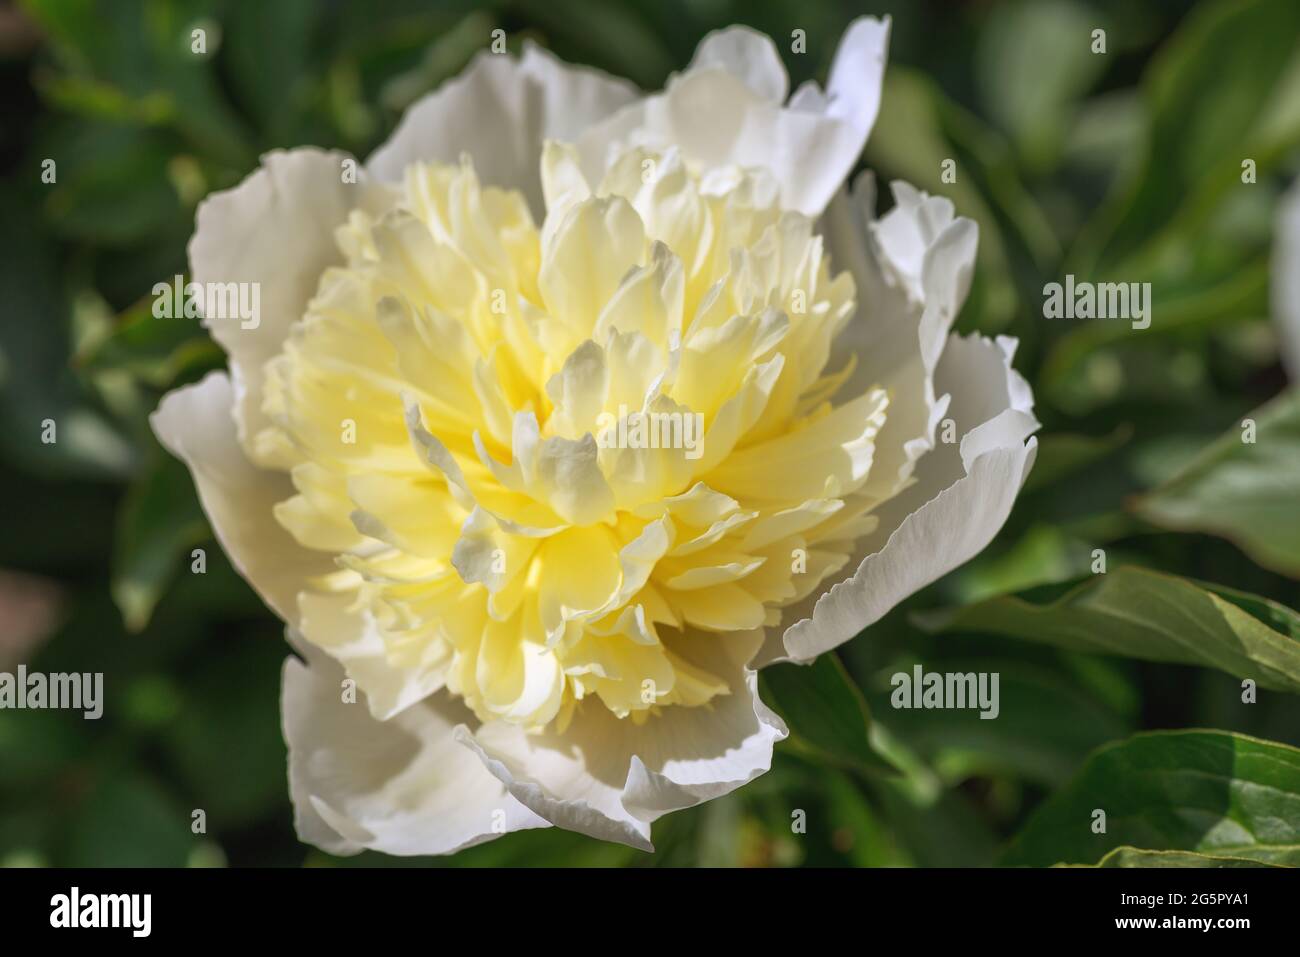 Pfingstrose-Fee in Lotusform. Üppige Blütenstände werden aus zarten halbdoppelten Blüten gebildet, die eine raffinierte Weiblichkeit verkörpern. Großes zartes Rosa Stockfoto